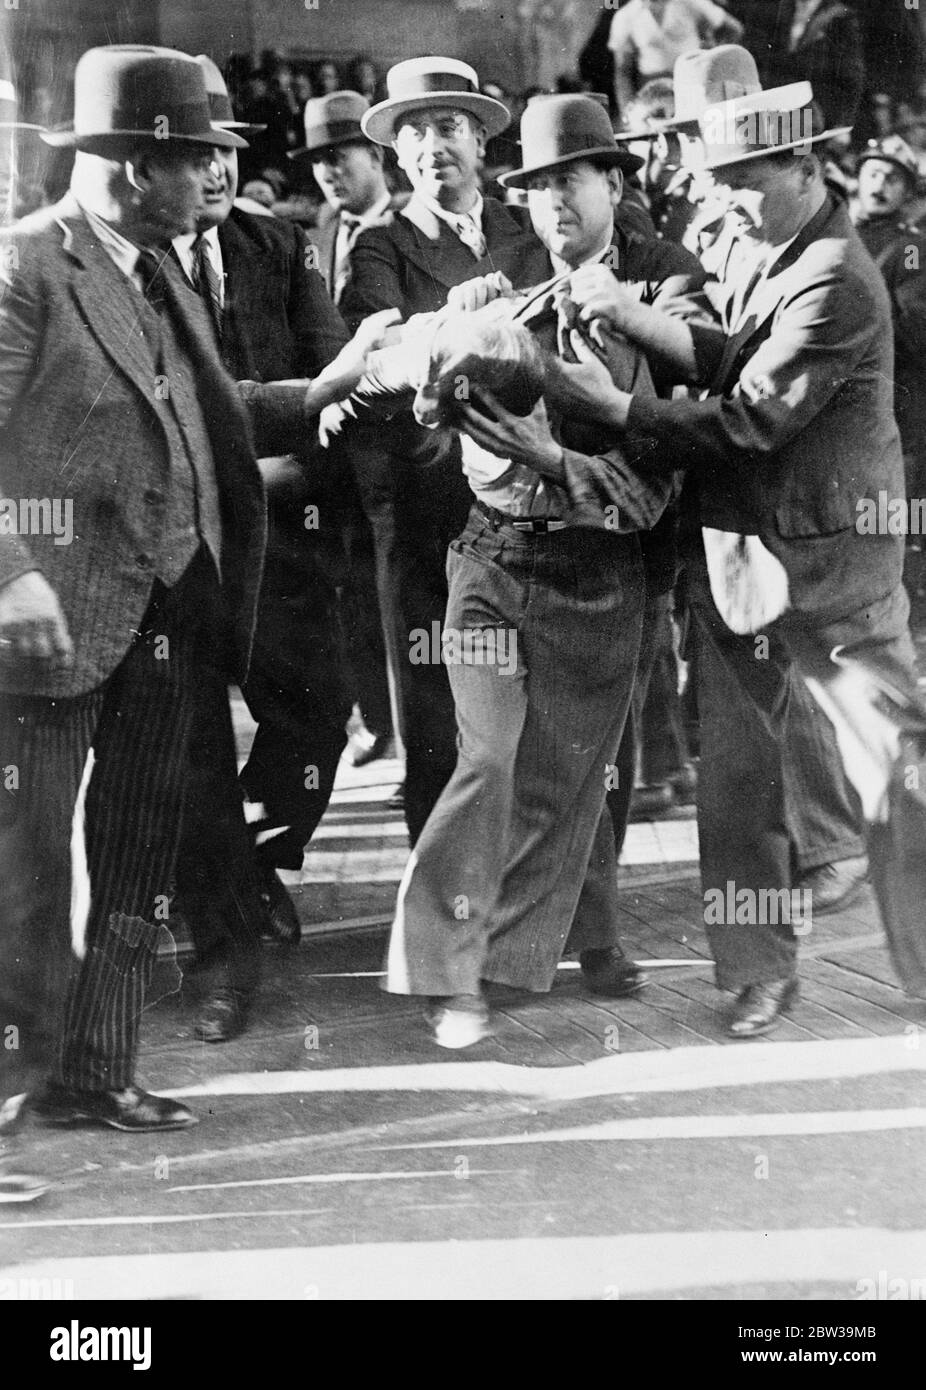 Más de mil arrestos en París contra los disturbios por corte salarial - policía en feroces batallas con manifestantes. Un manifestante detenido que lucha por liberarse en el Boulevard Haussmann . 20 de julio de 1935 Foto de stock